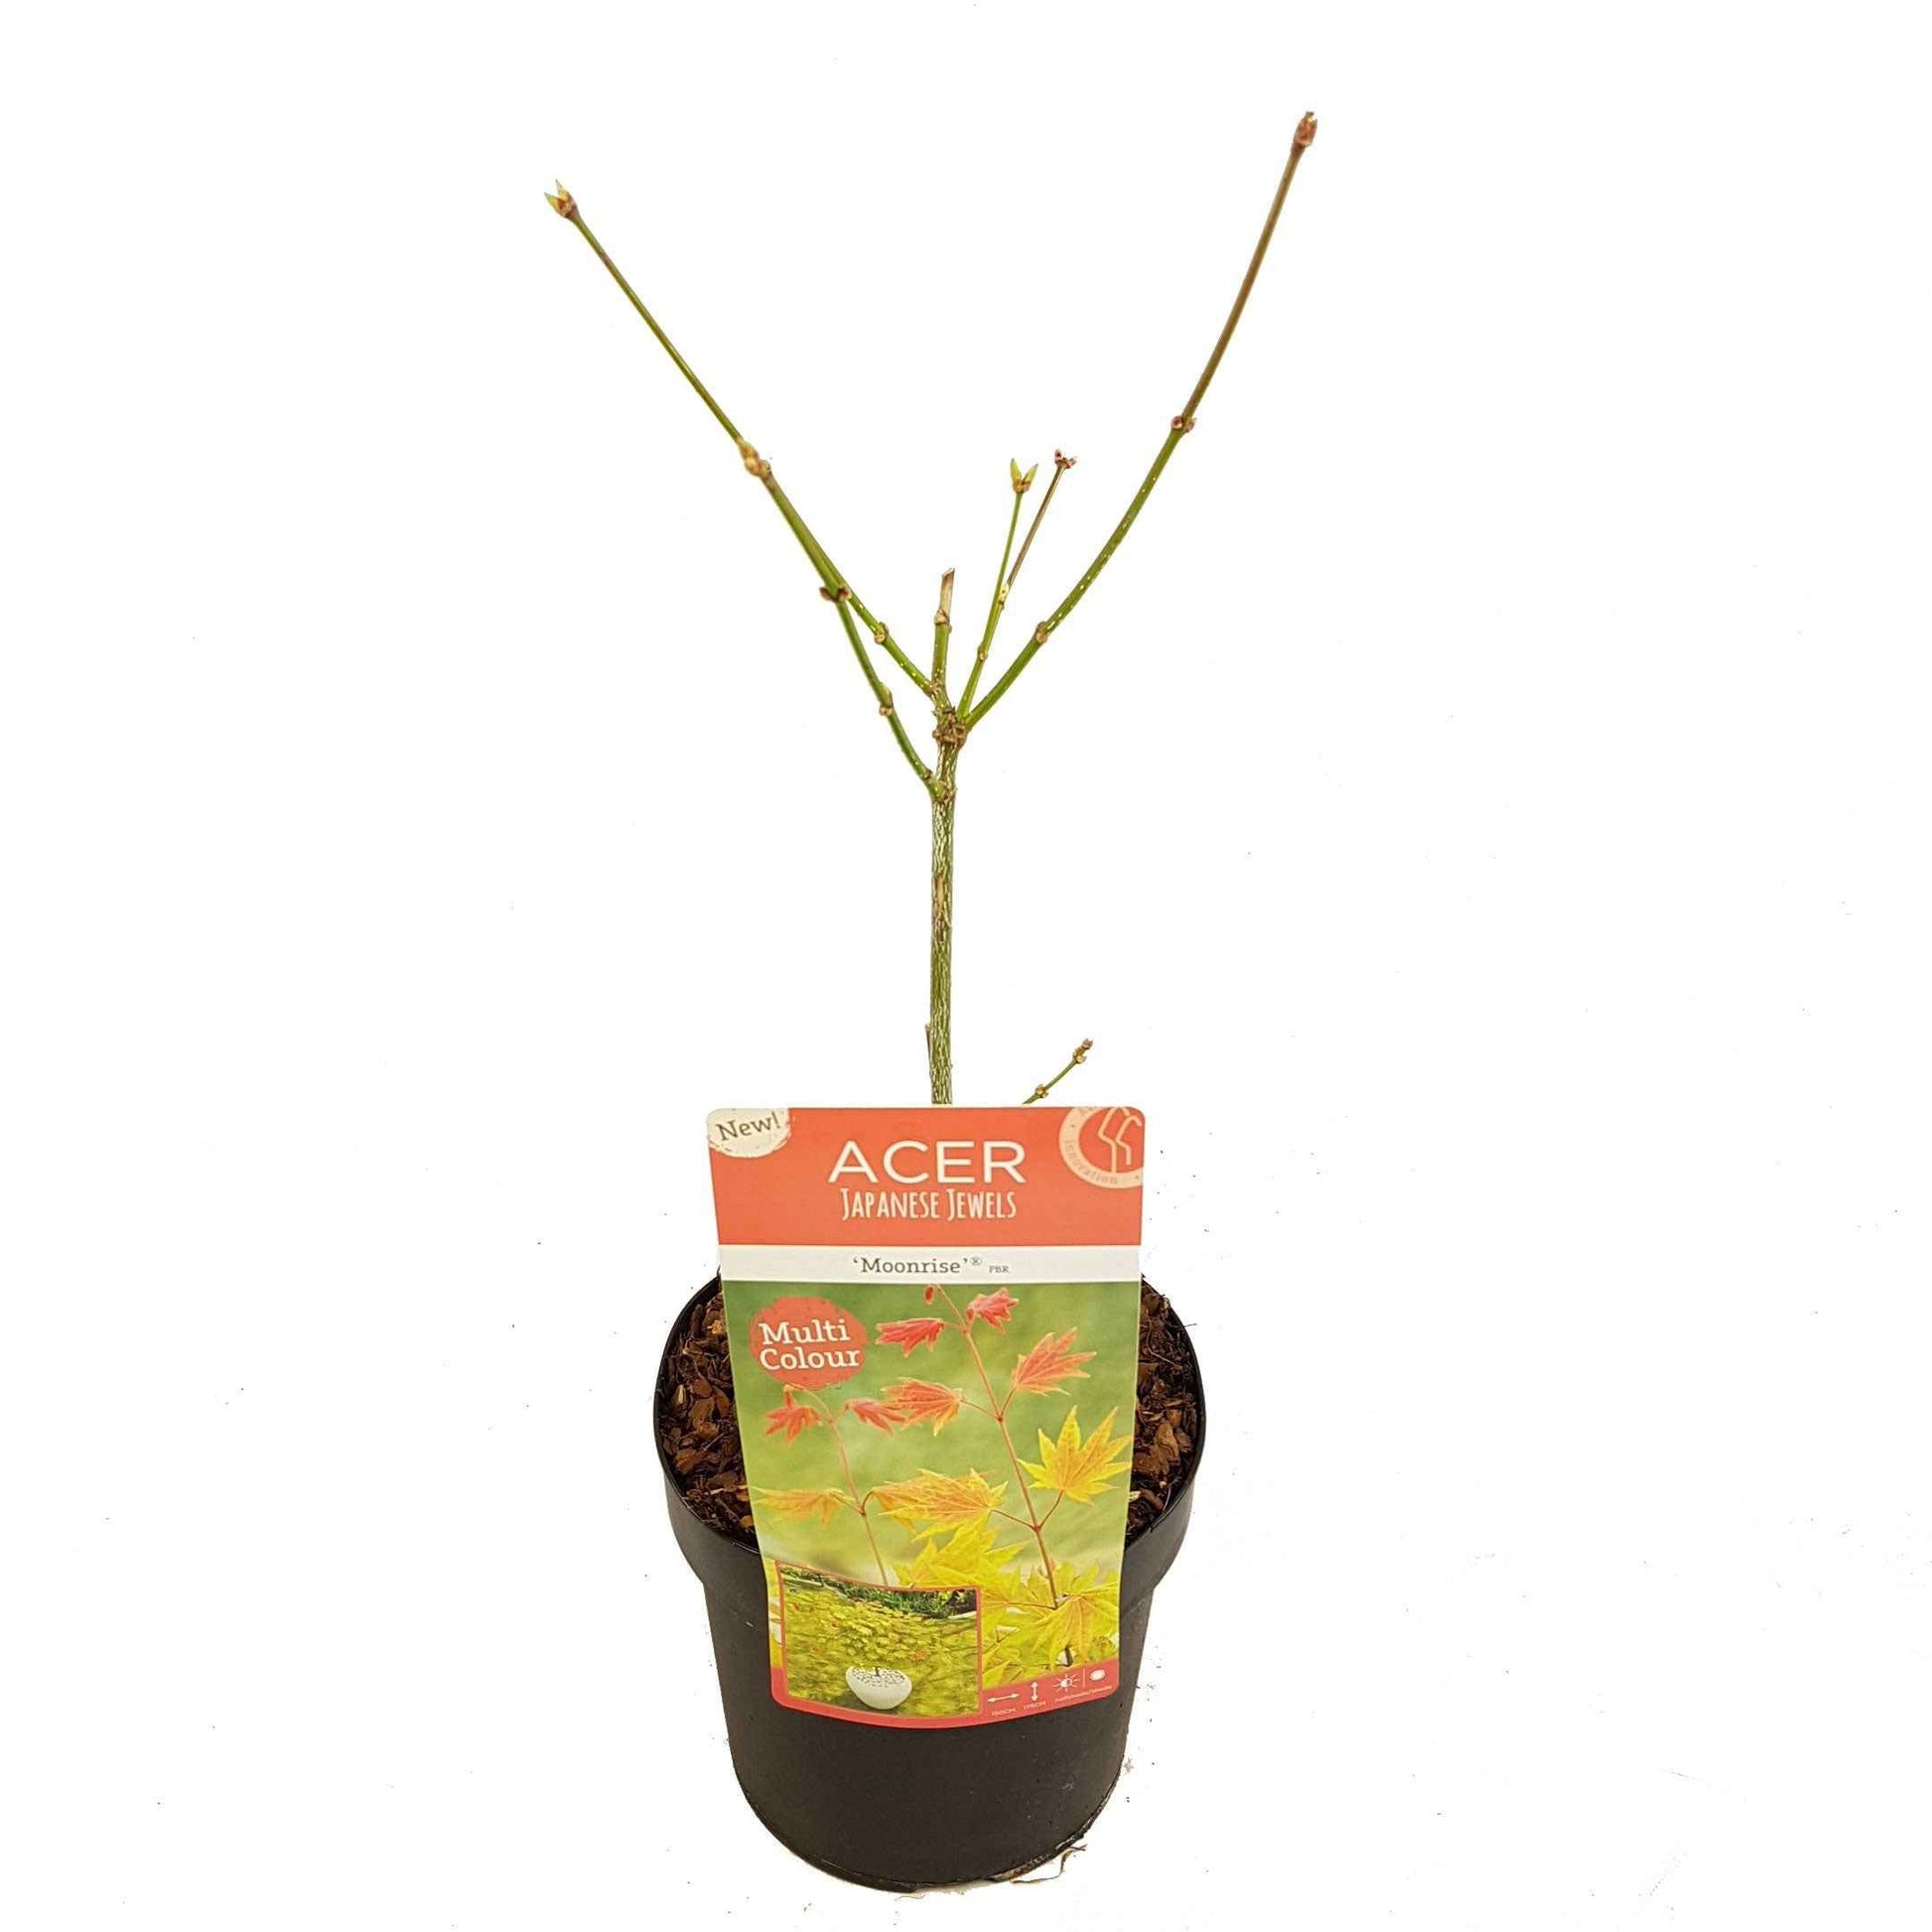 Japanischer Ahorn Acer 'Moonrise' gelb-rot-orange - Winterhart - Pflanzeneigenschaften